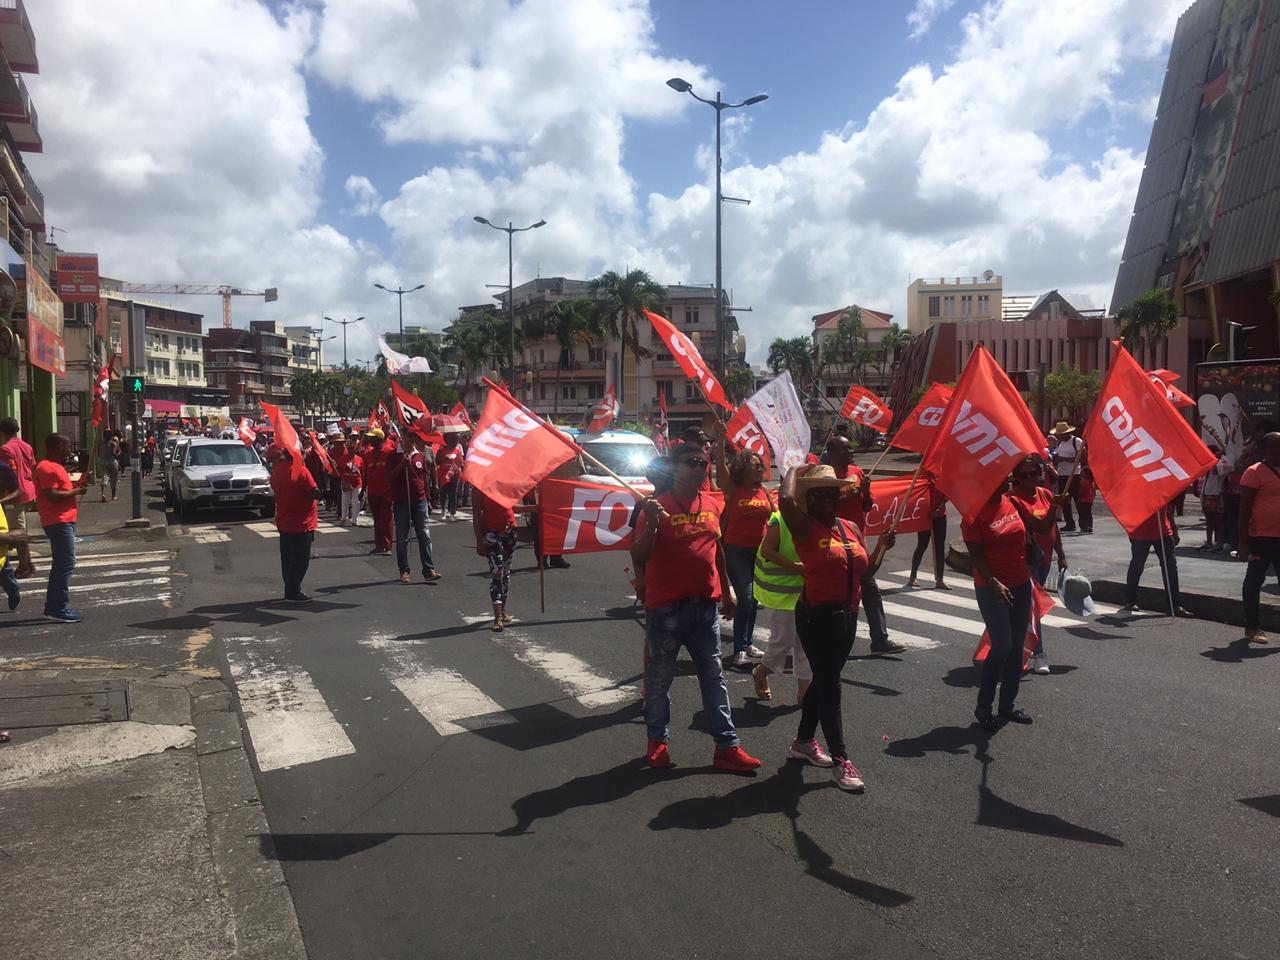     Mobilisation contre la réforme des retraites : entre 1 500 et 2 000 personnes dans les rues de Fort-de-France

